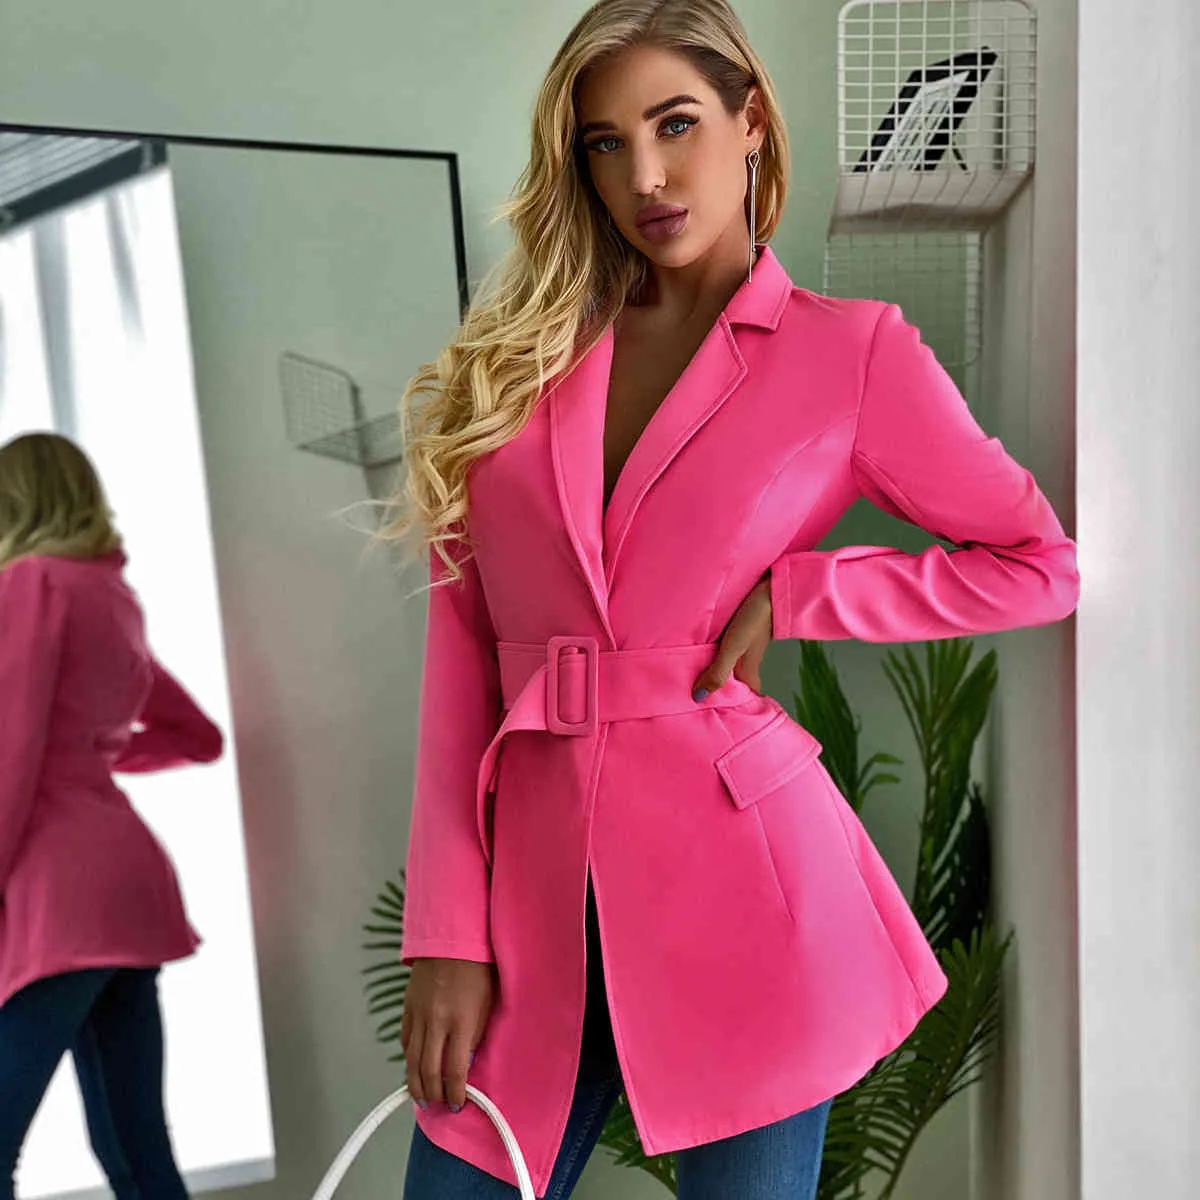 Elegancki Pas Blazer Kurtka Kobiety Biznes Biuro Panie Blazer Płaszcz Jesień Winter Streetstyle Pink Coat Streawear 210415